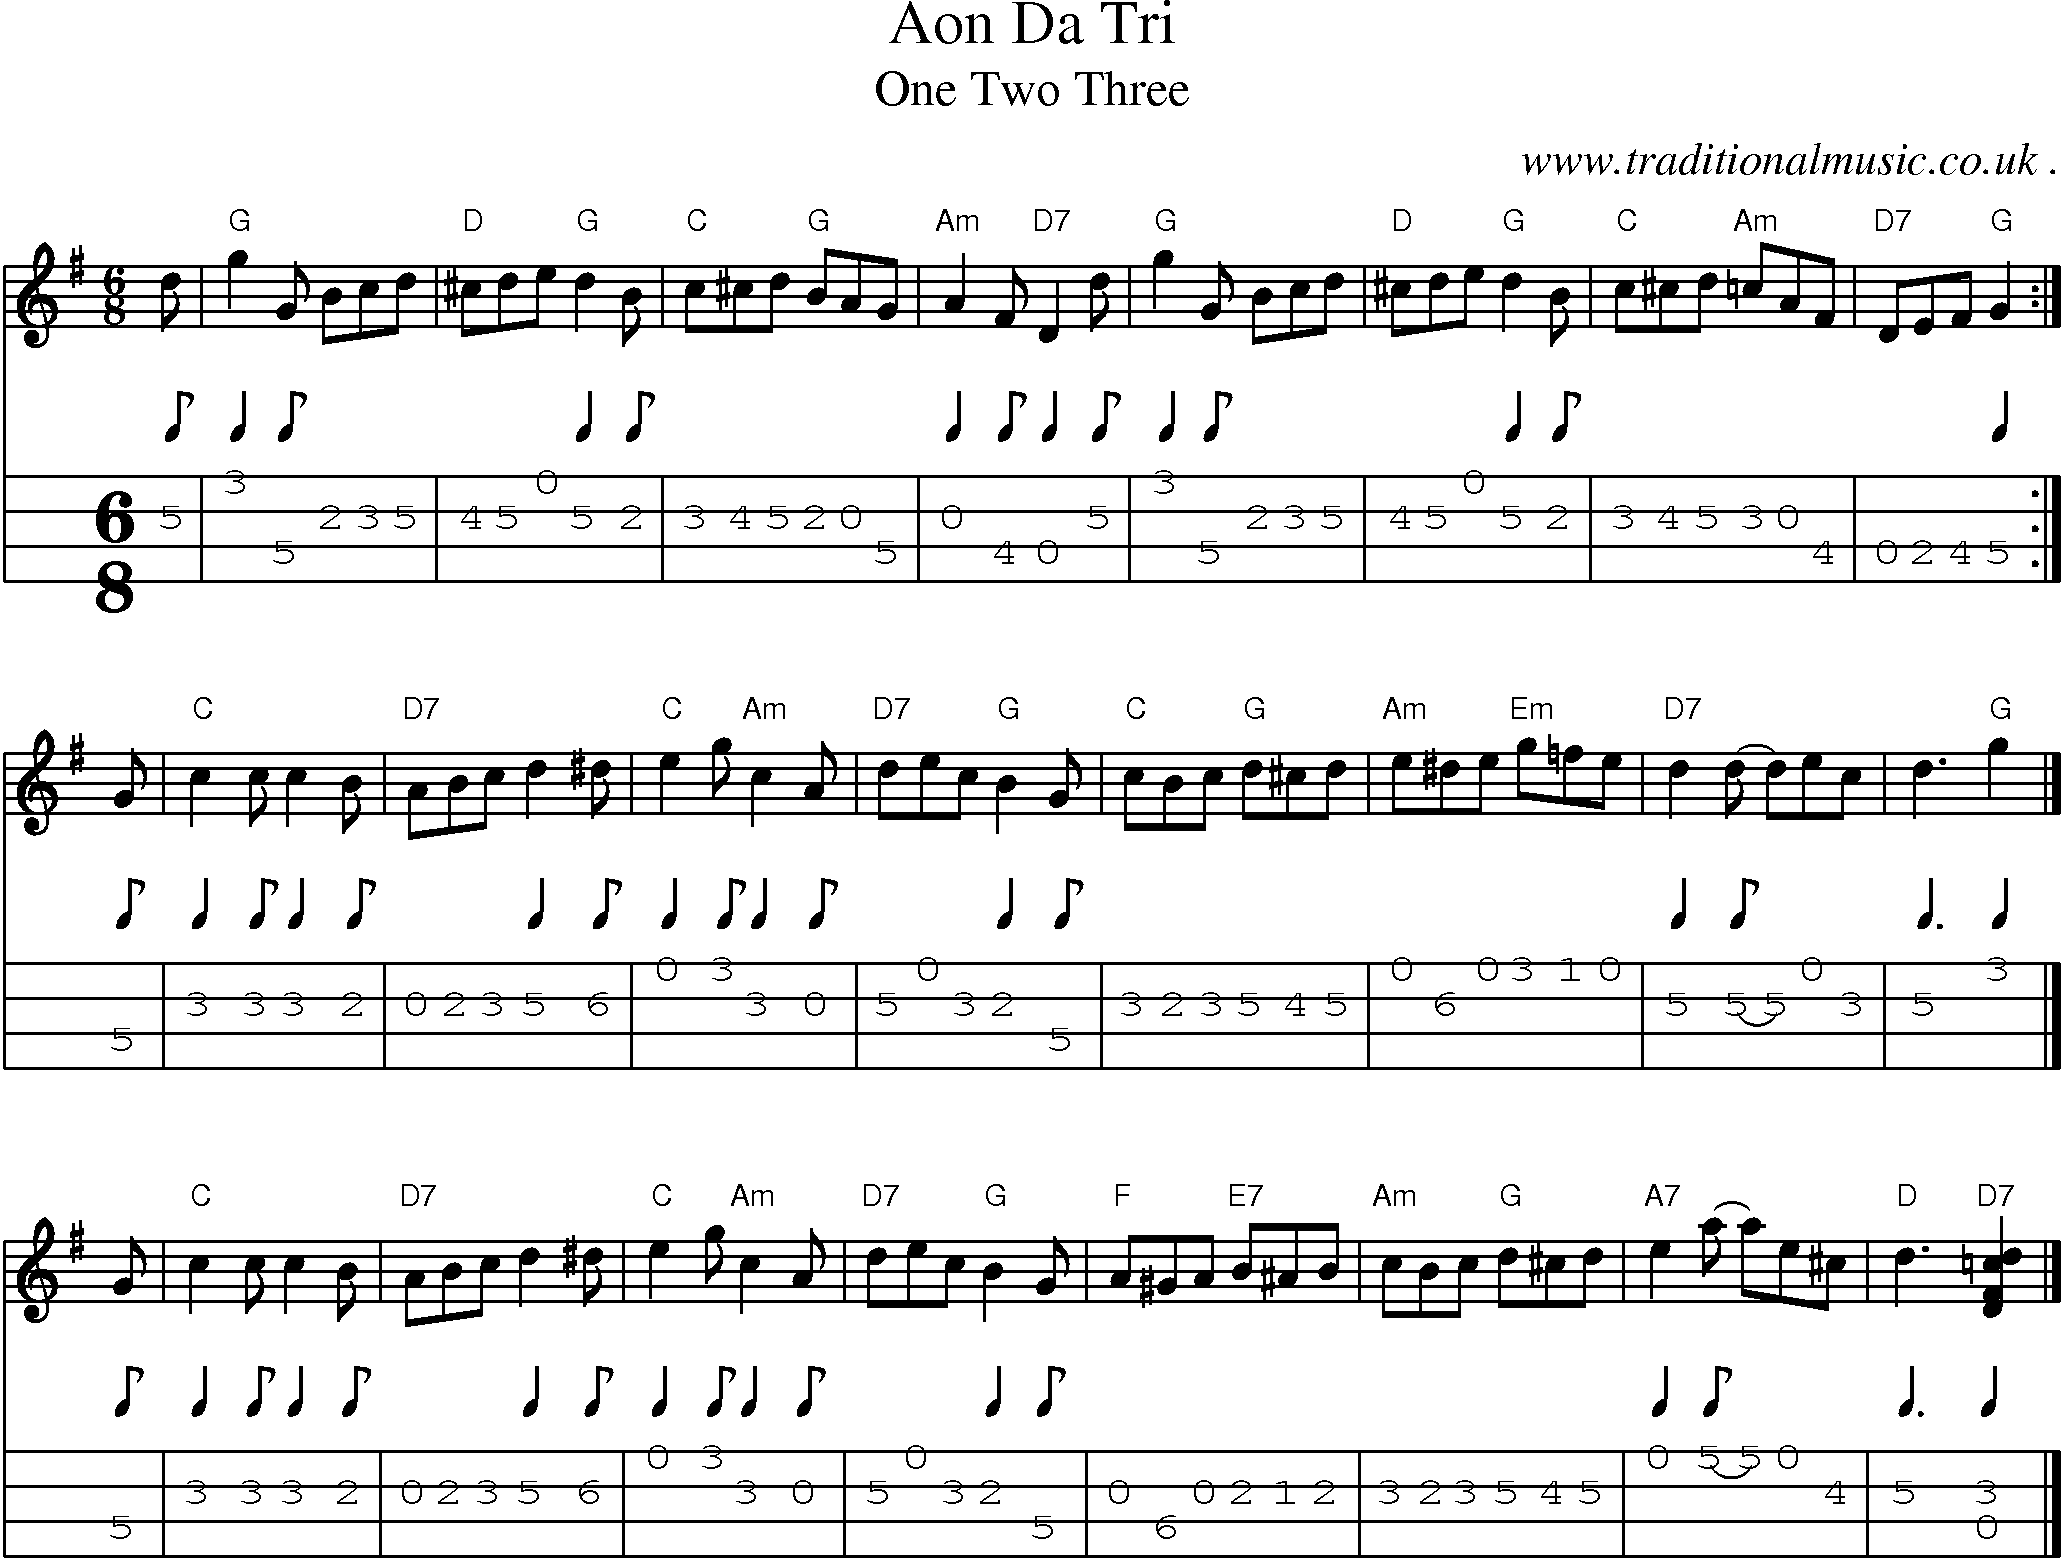 Sheet-music  score, Chords and Mandolin Tabs for Aon Da Tri